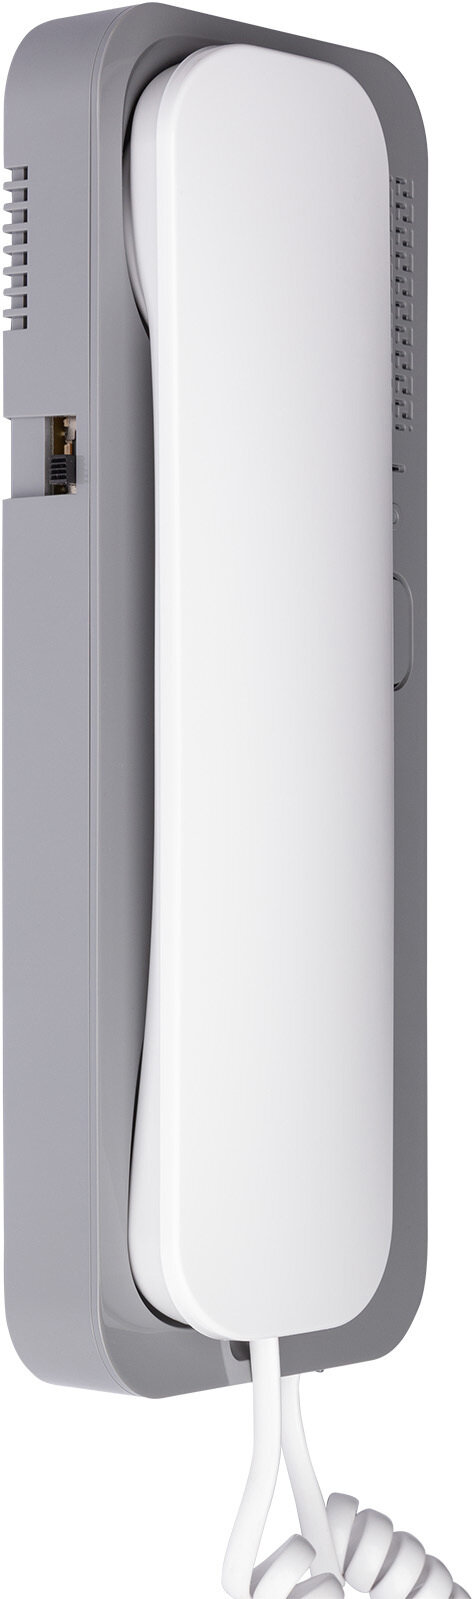 Трубка домофона Unifon Smart U цвет бело-серый